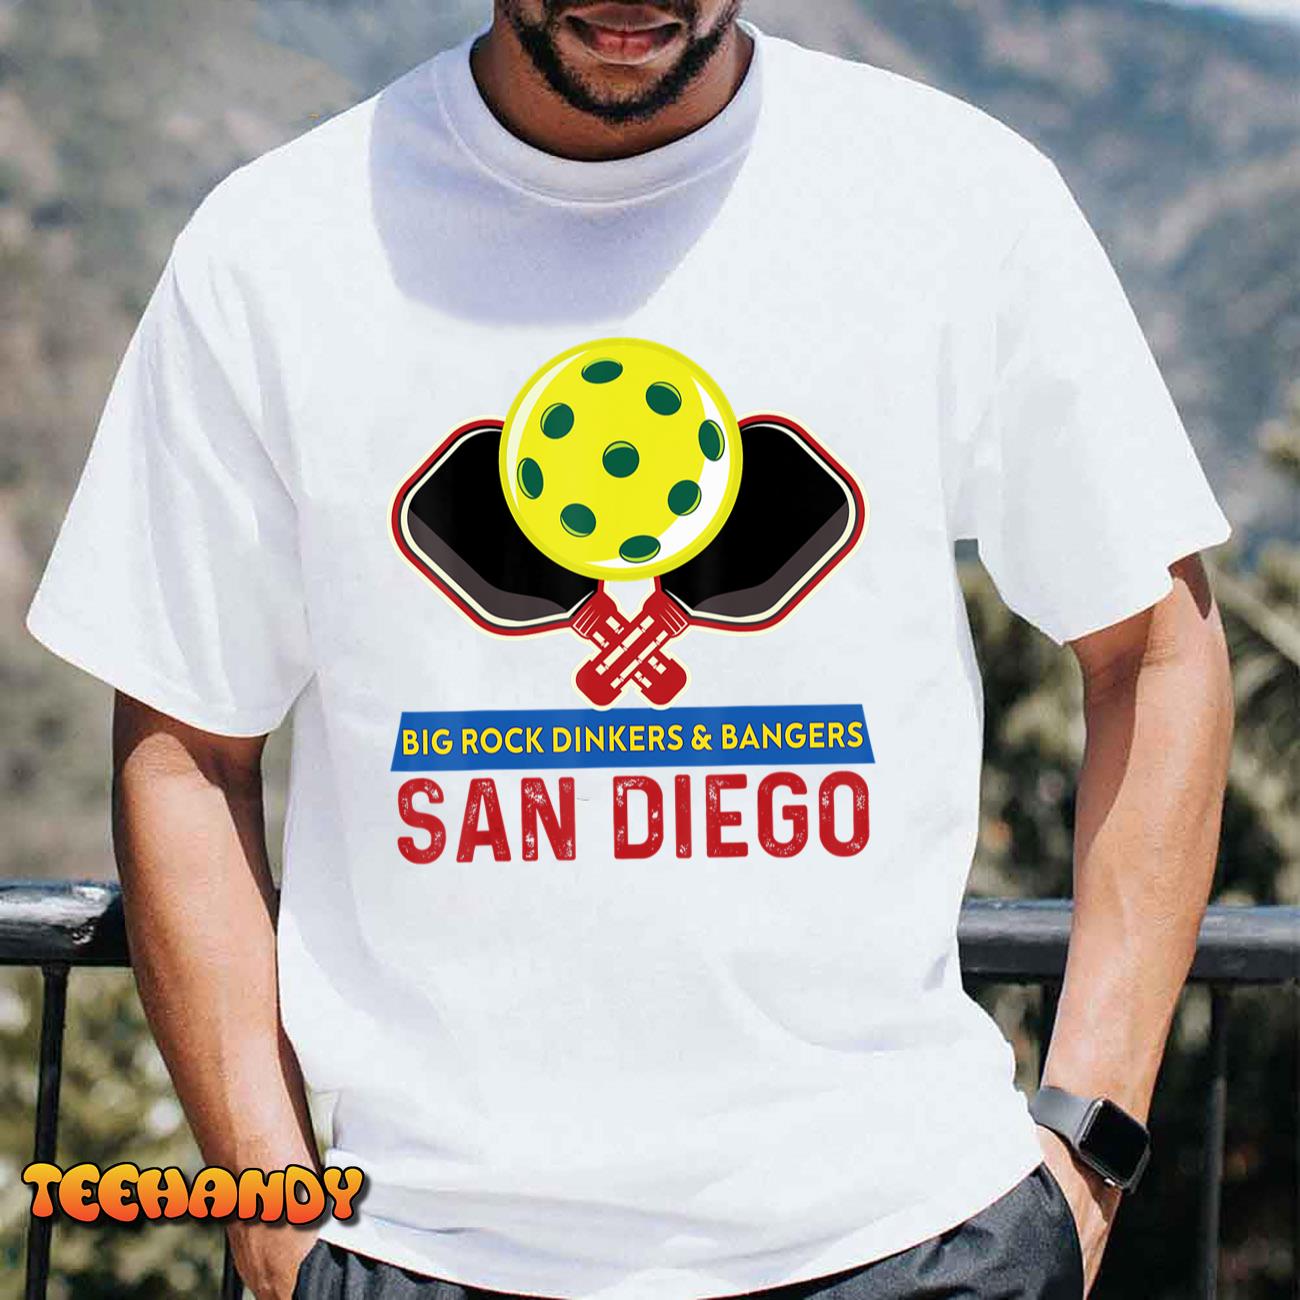 San Diego Pickleball for Pickleball Player Or Pickleball Fan T-Shirt